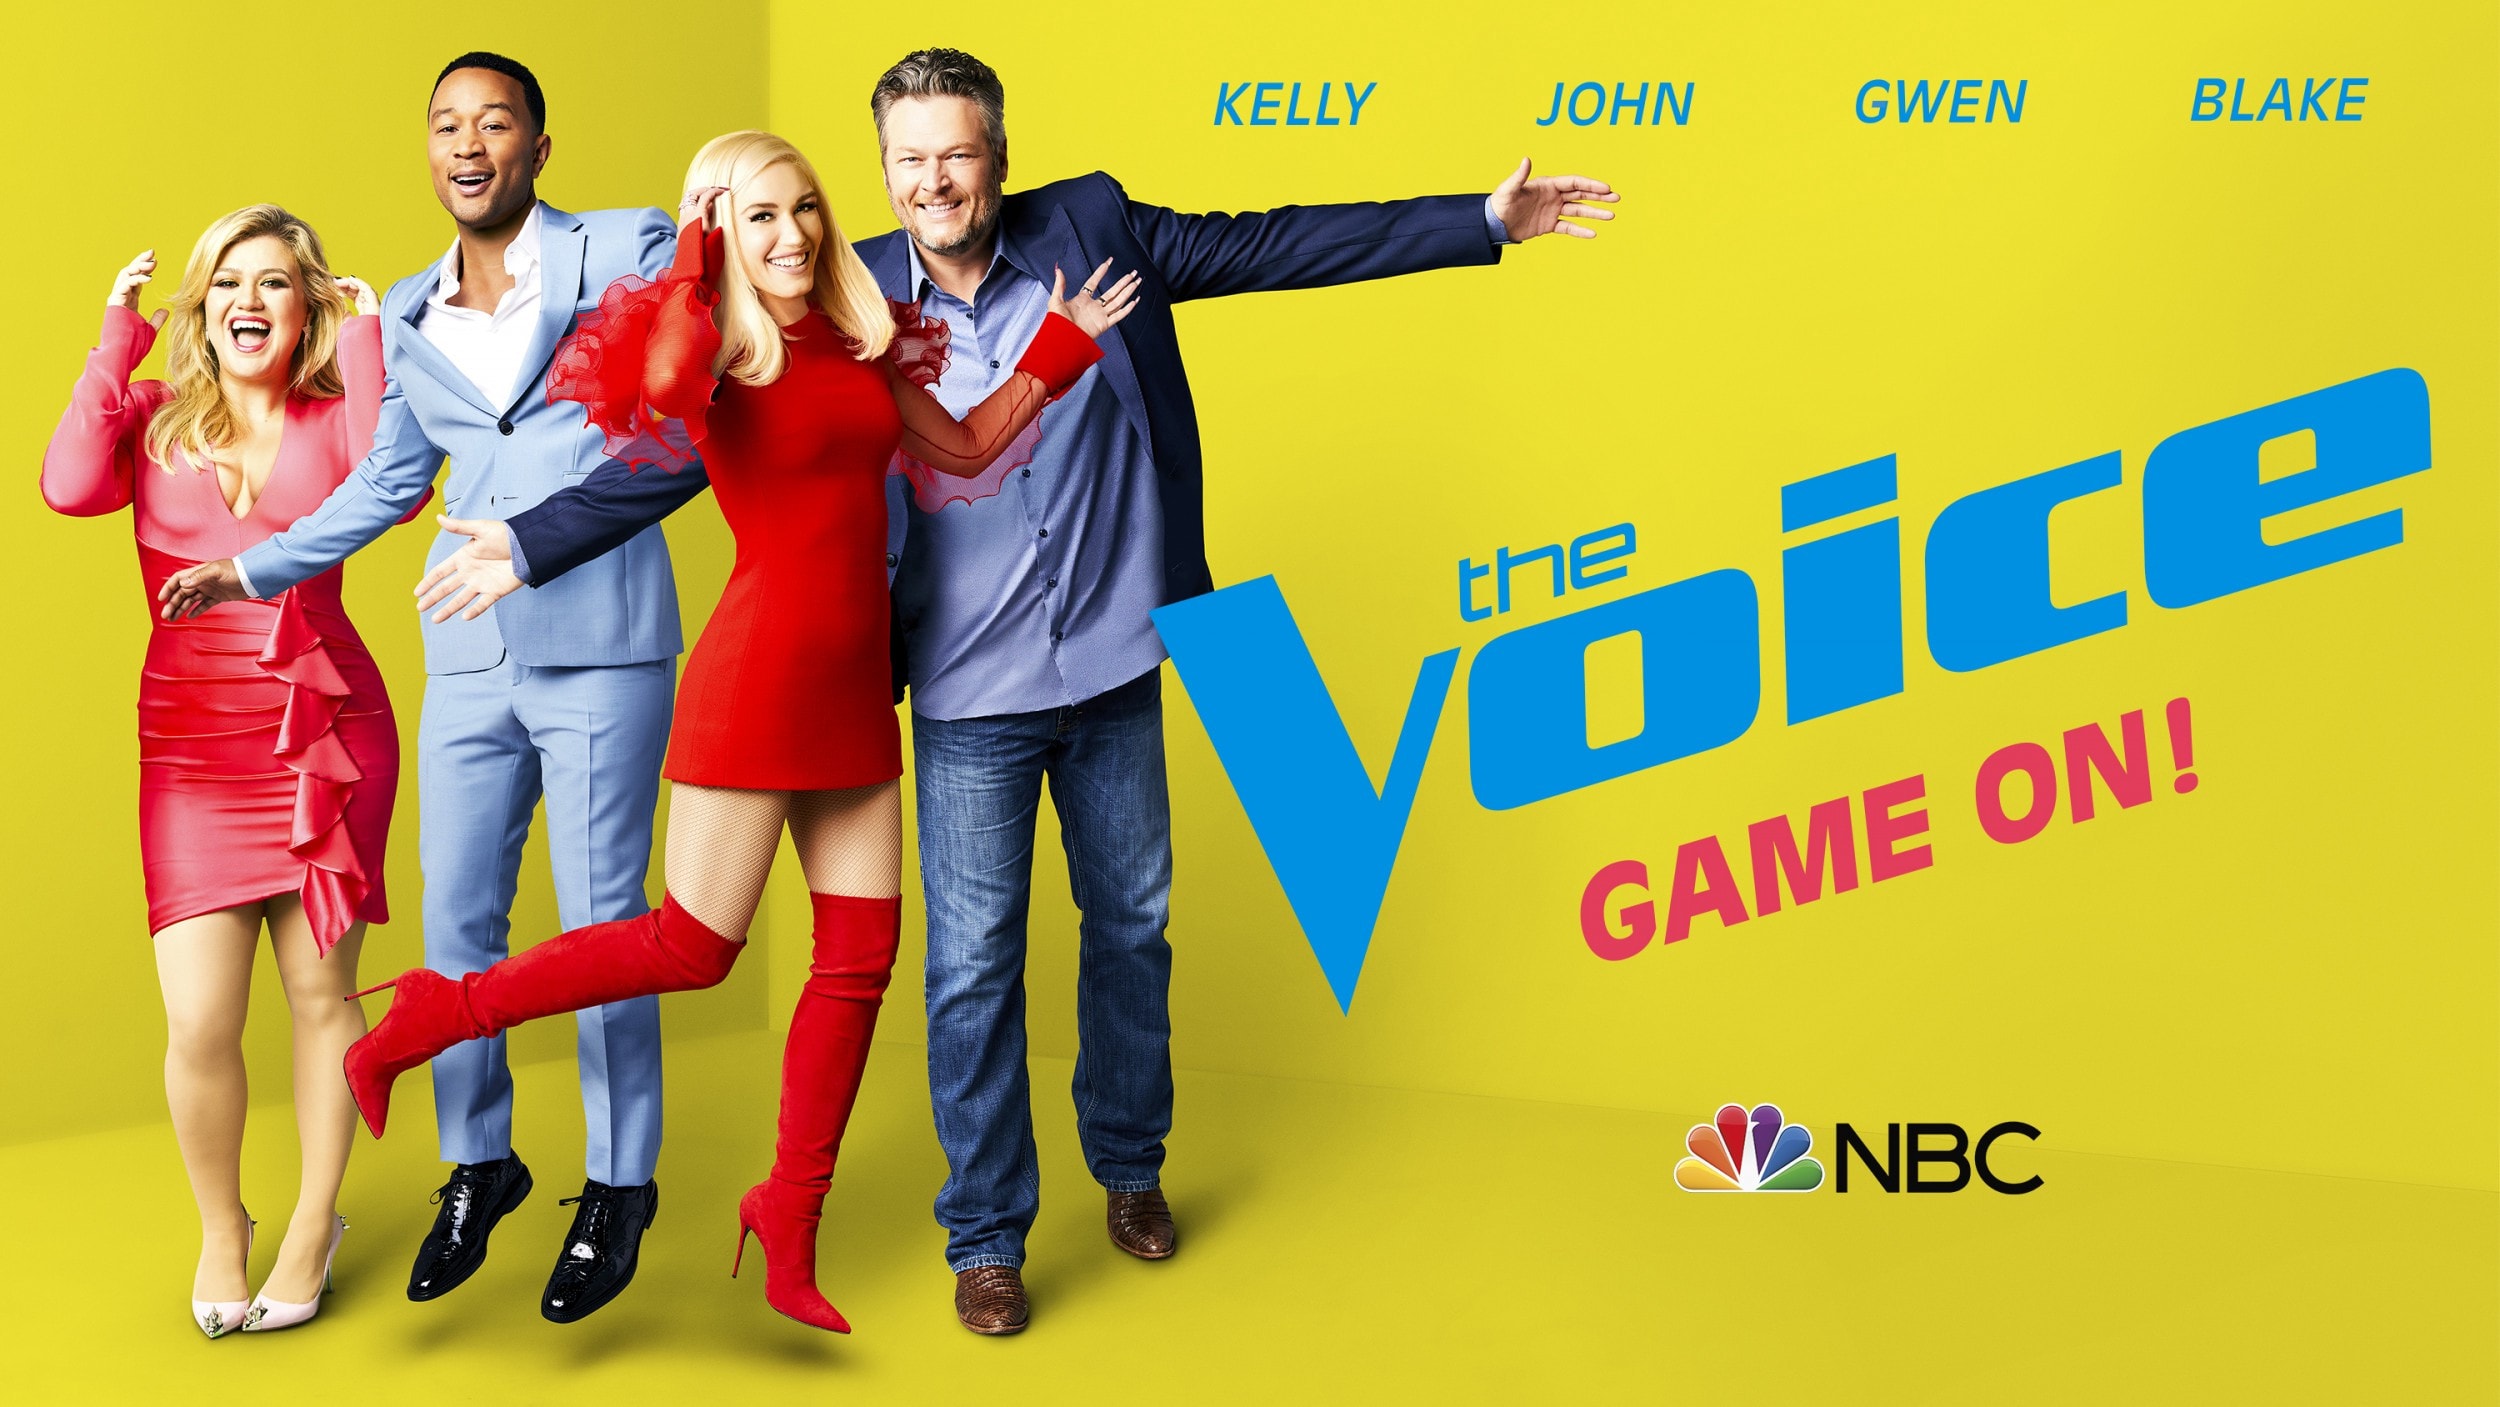 JD The Voice regresará a NBC con la Temporada 18 el próximo 24 de febrero de 2020